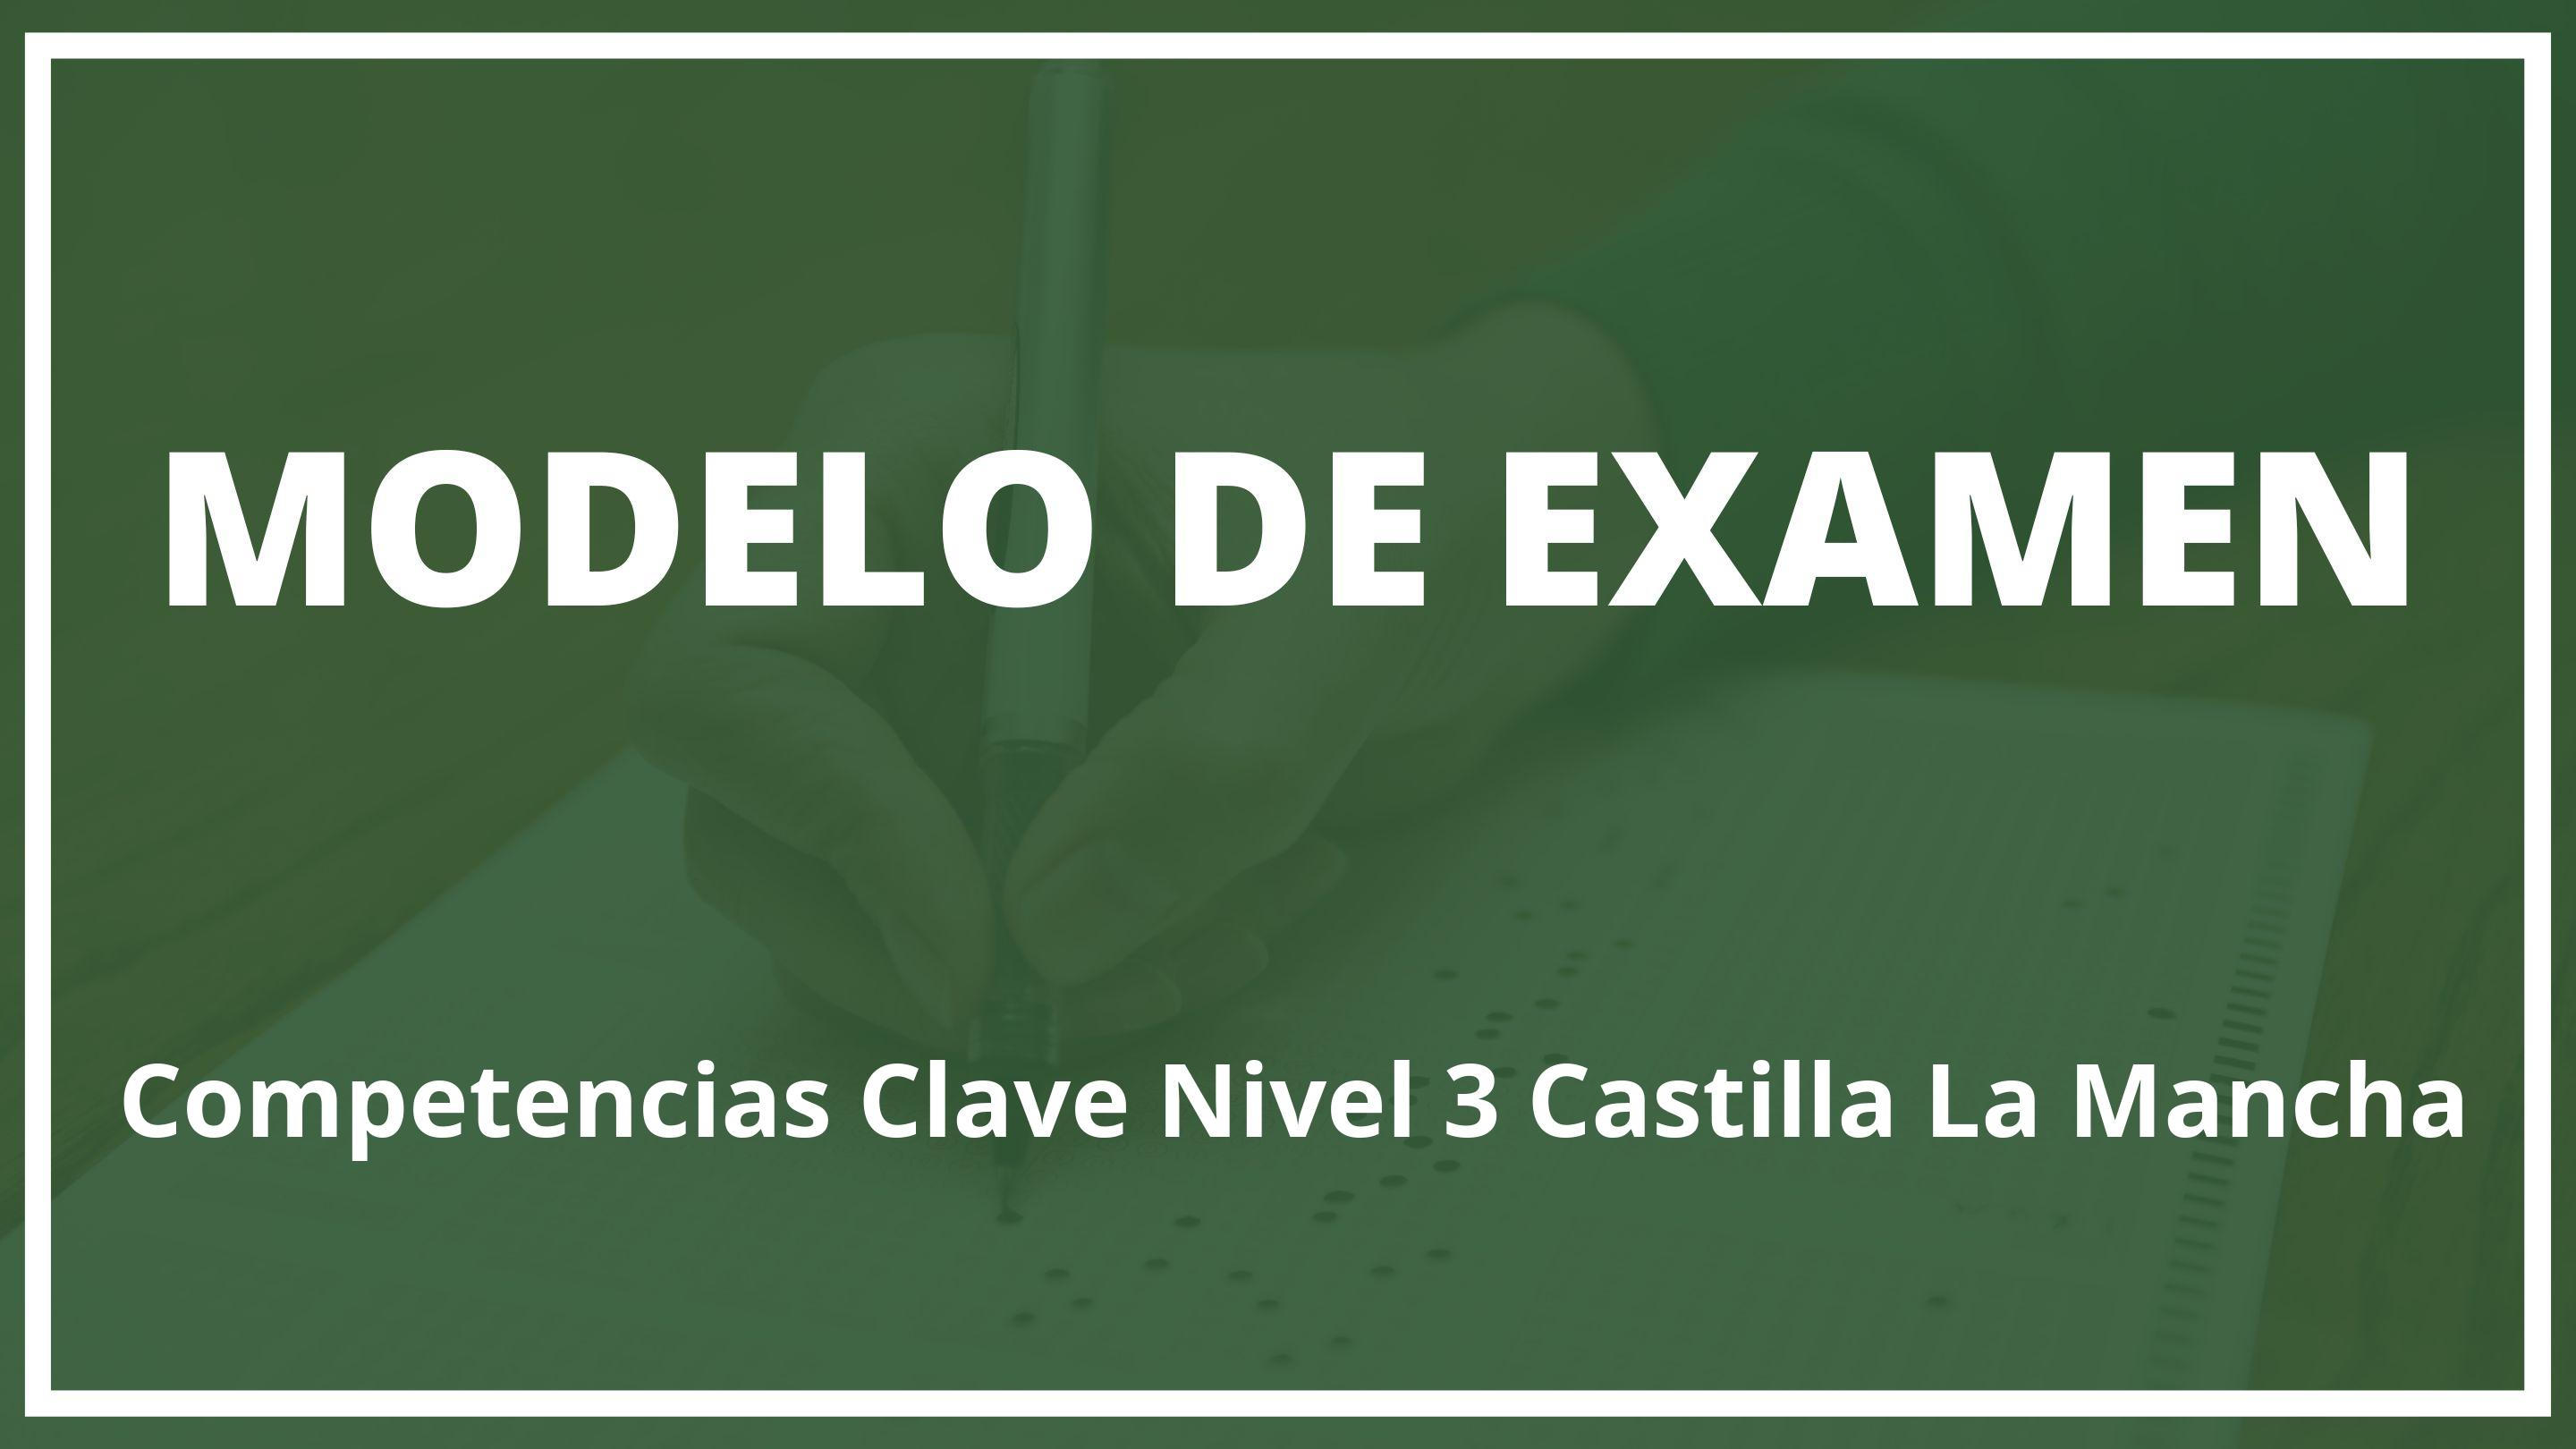 Examen Competencias Clave Nivel 3 Castilla La Mancha